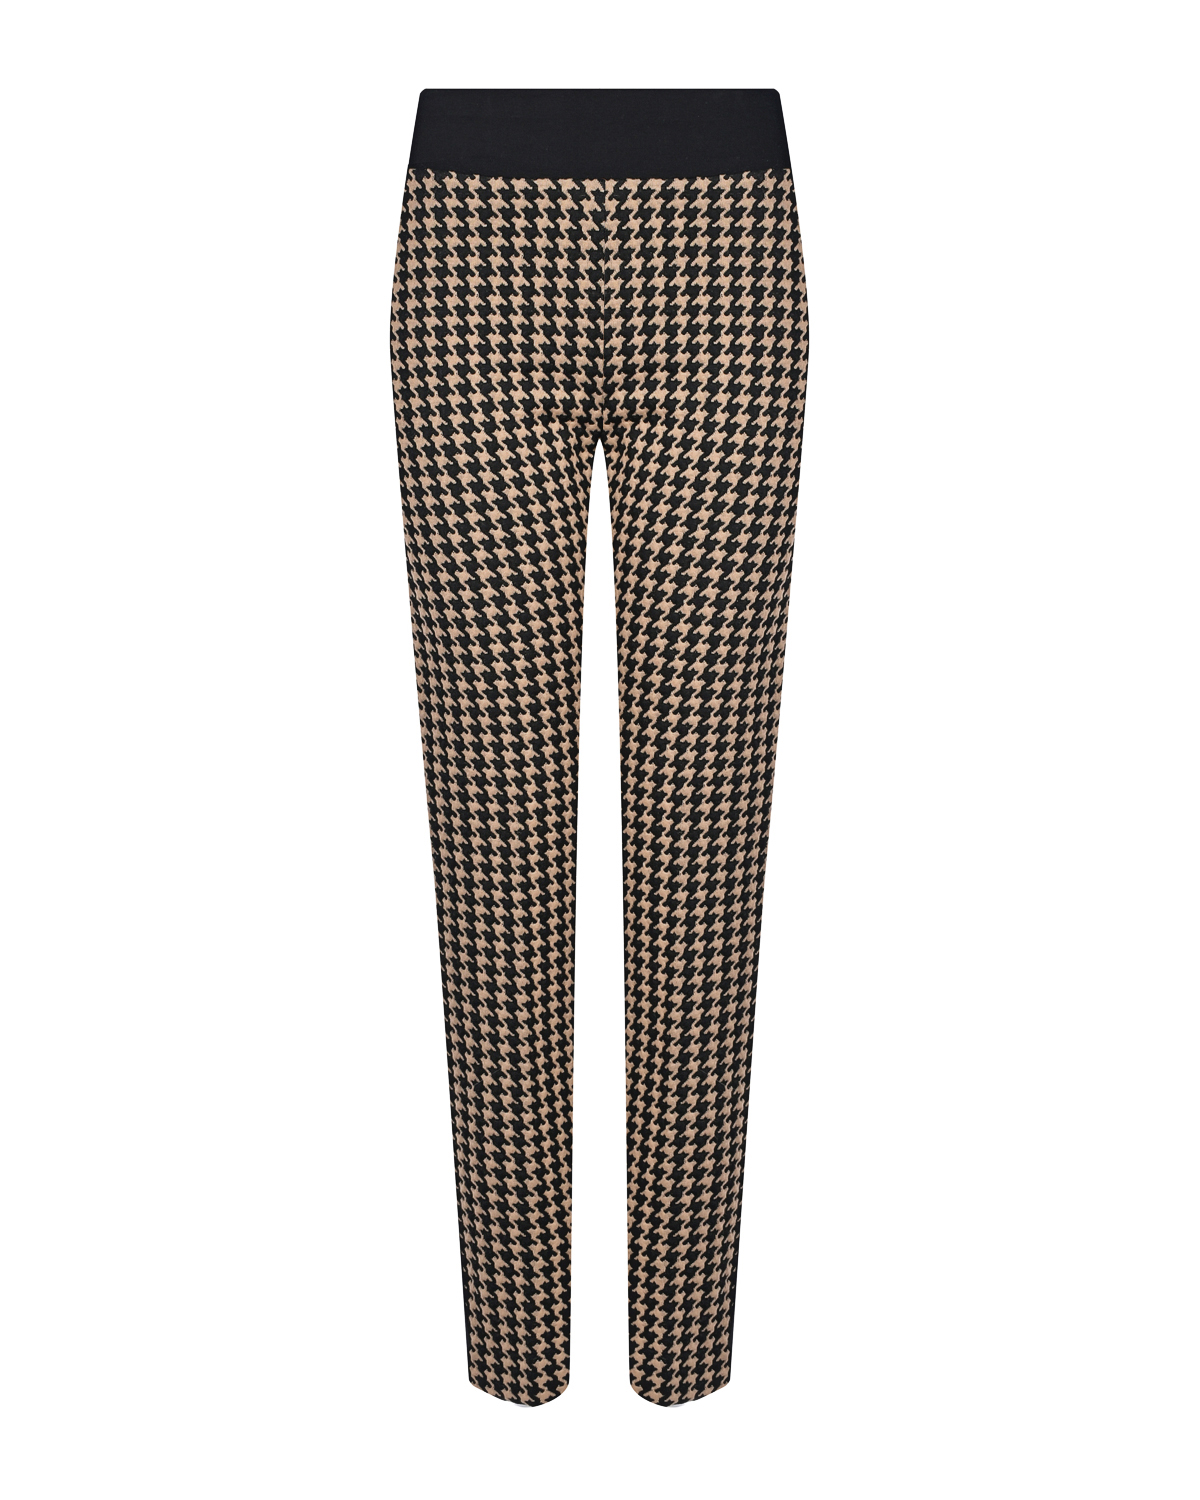 Трикотажные брюки с принтом пье-де-пуль Deha, размер 40, цвет черный - фото 1